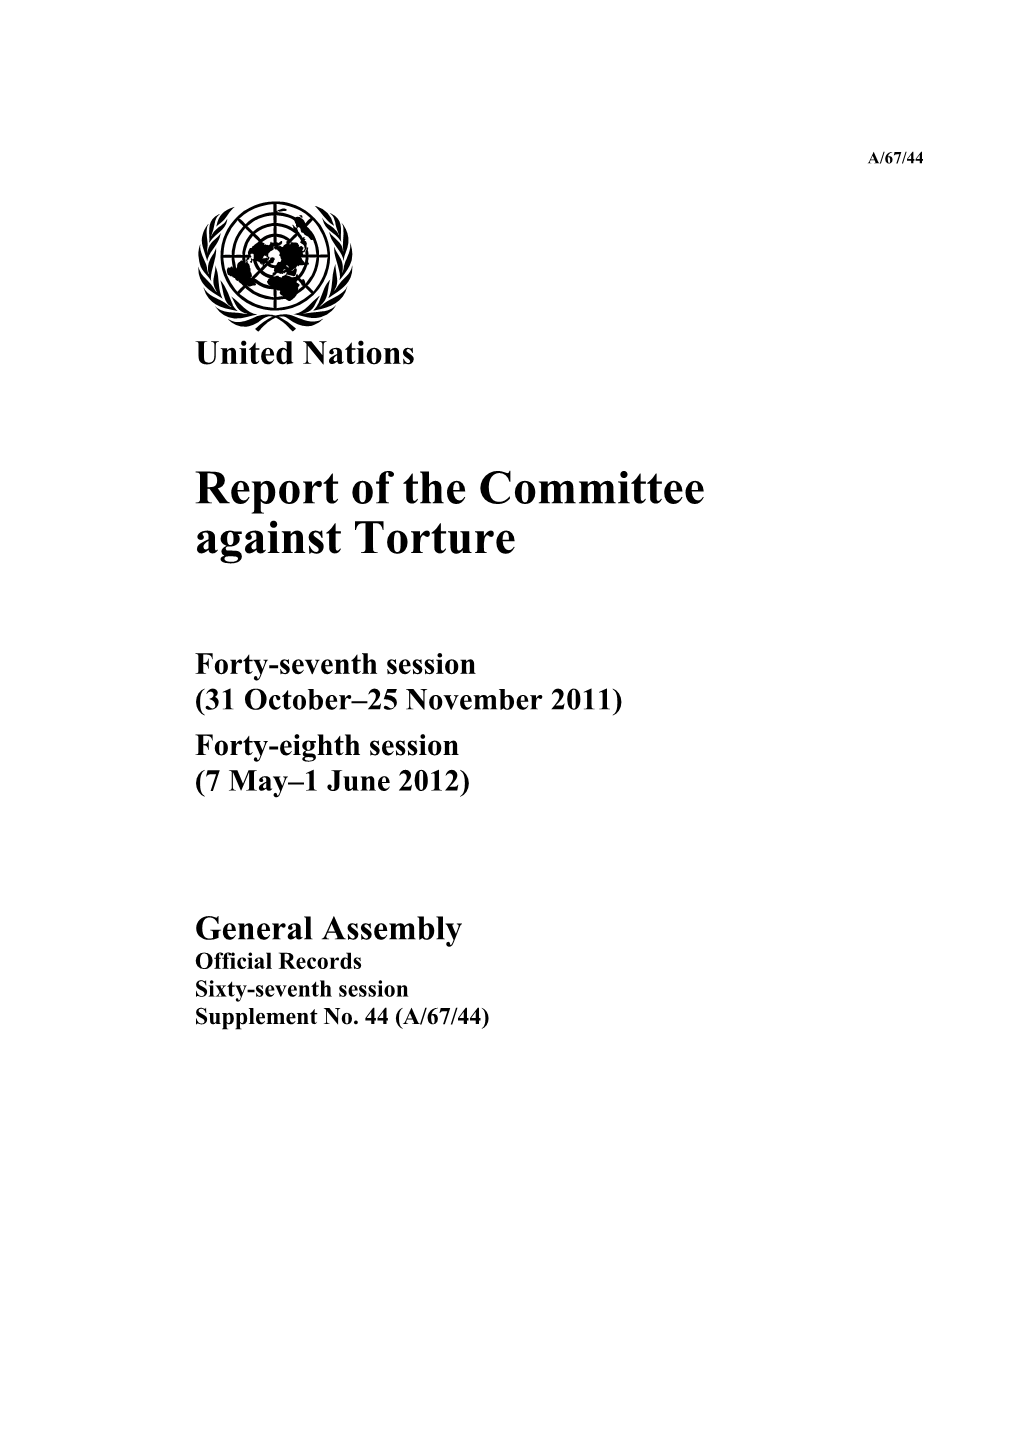 Against Torture